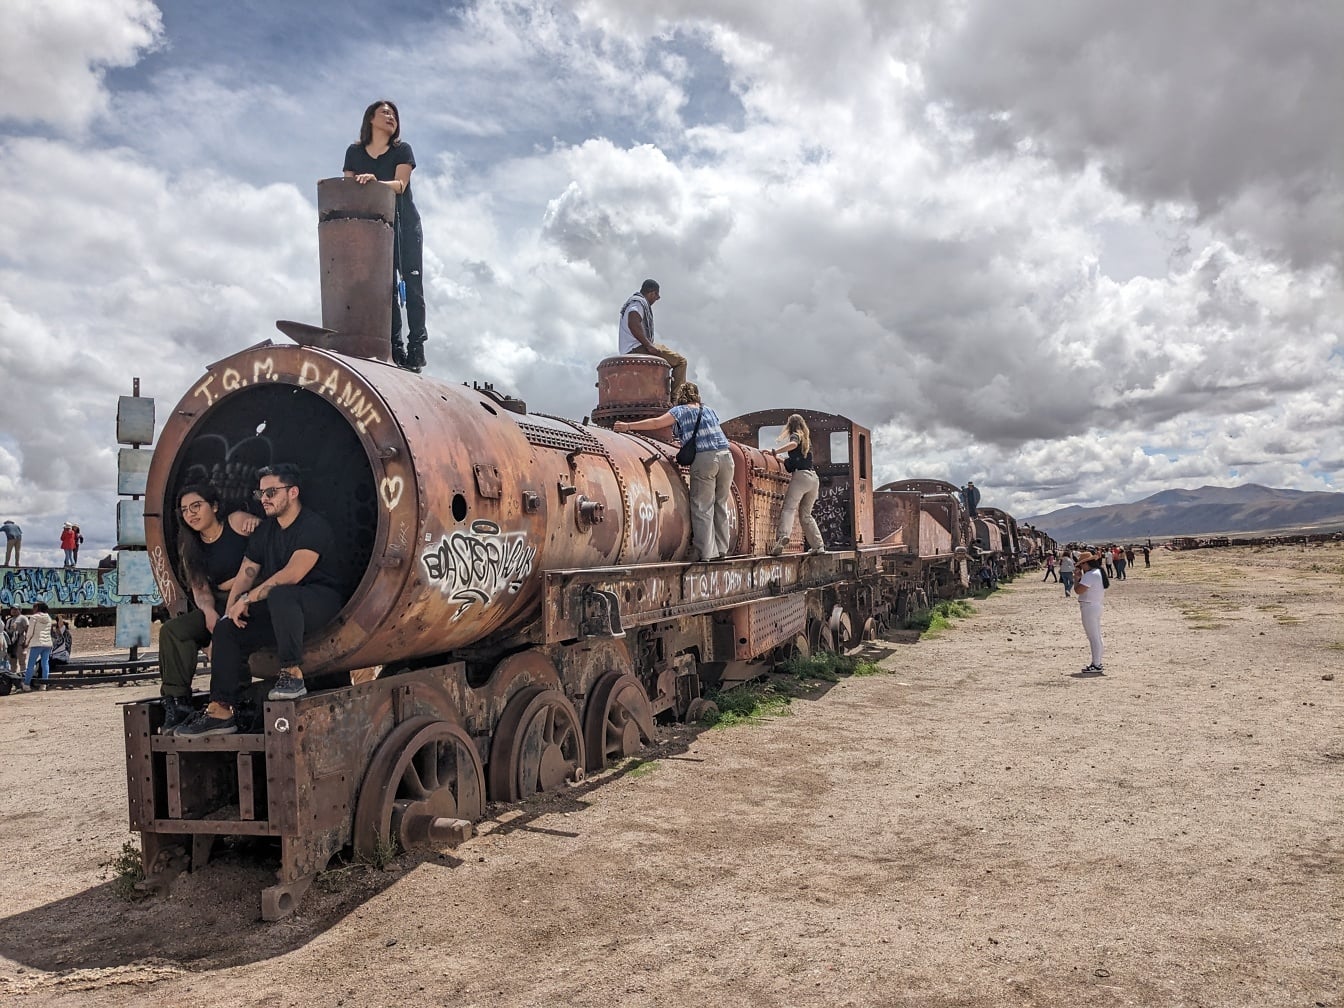 Turis di kereta berkarat ditinggalkan di padang pasir di tempat yang dikenal sebagai pemakaman kereta api